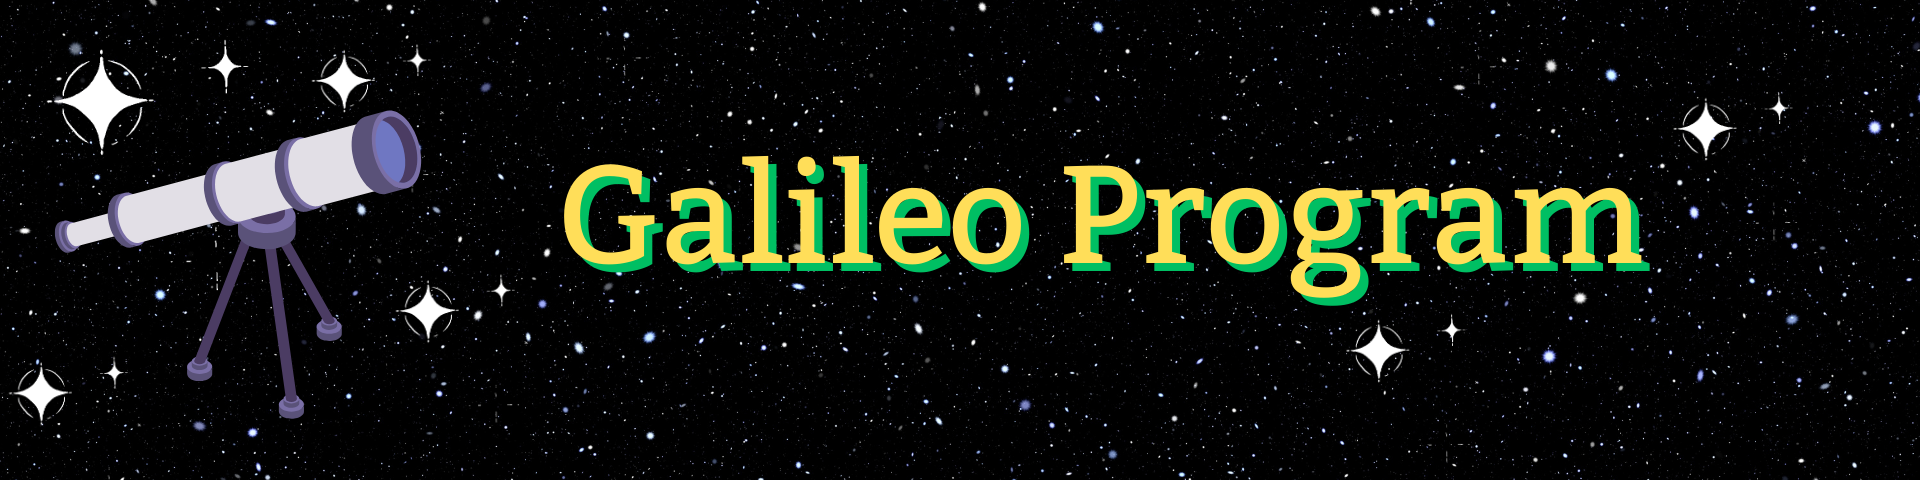 Galileo Program